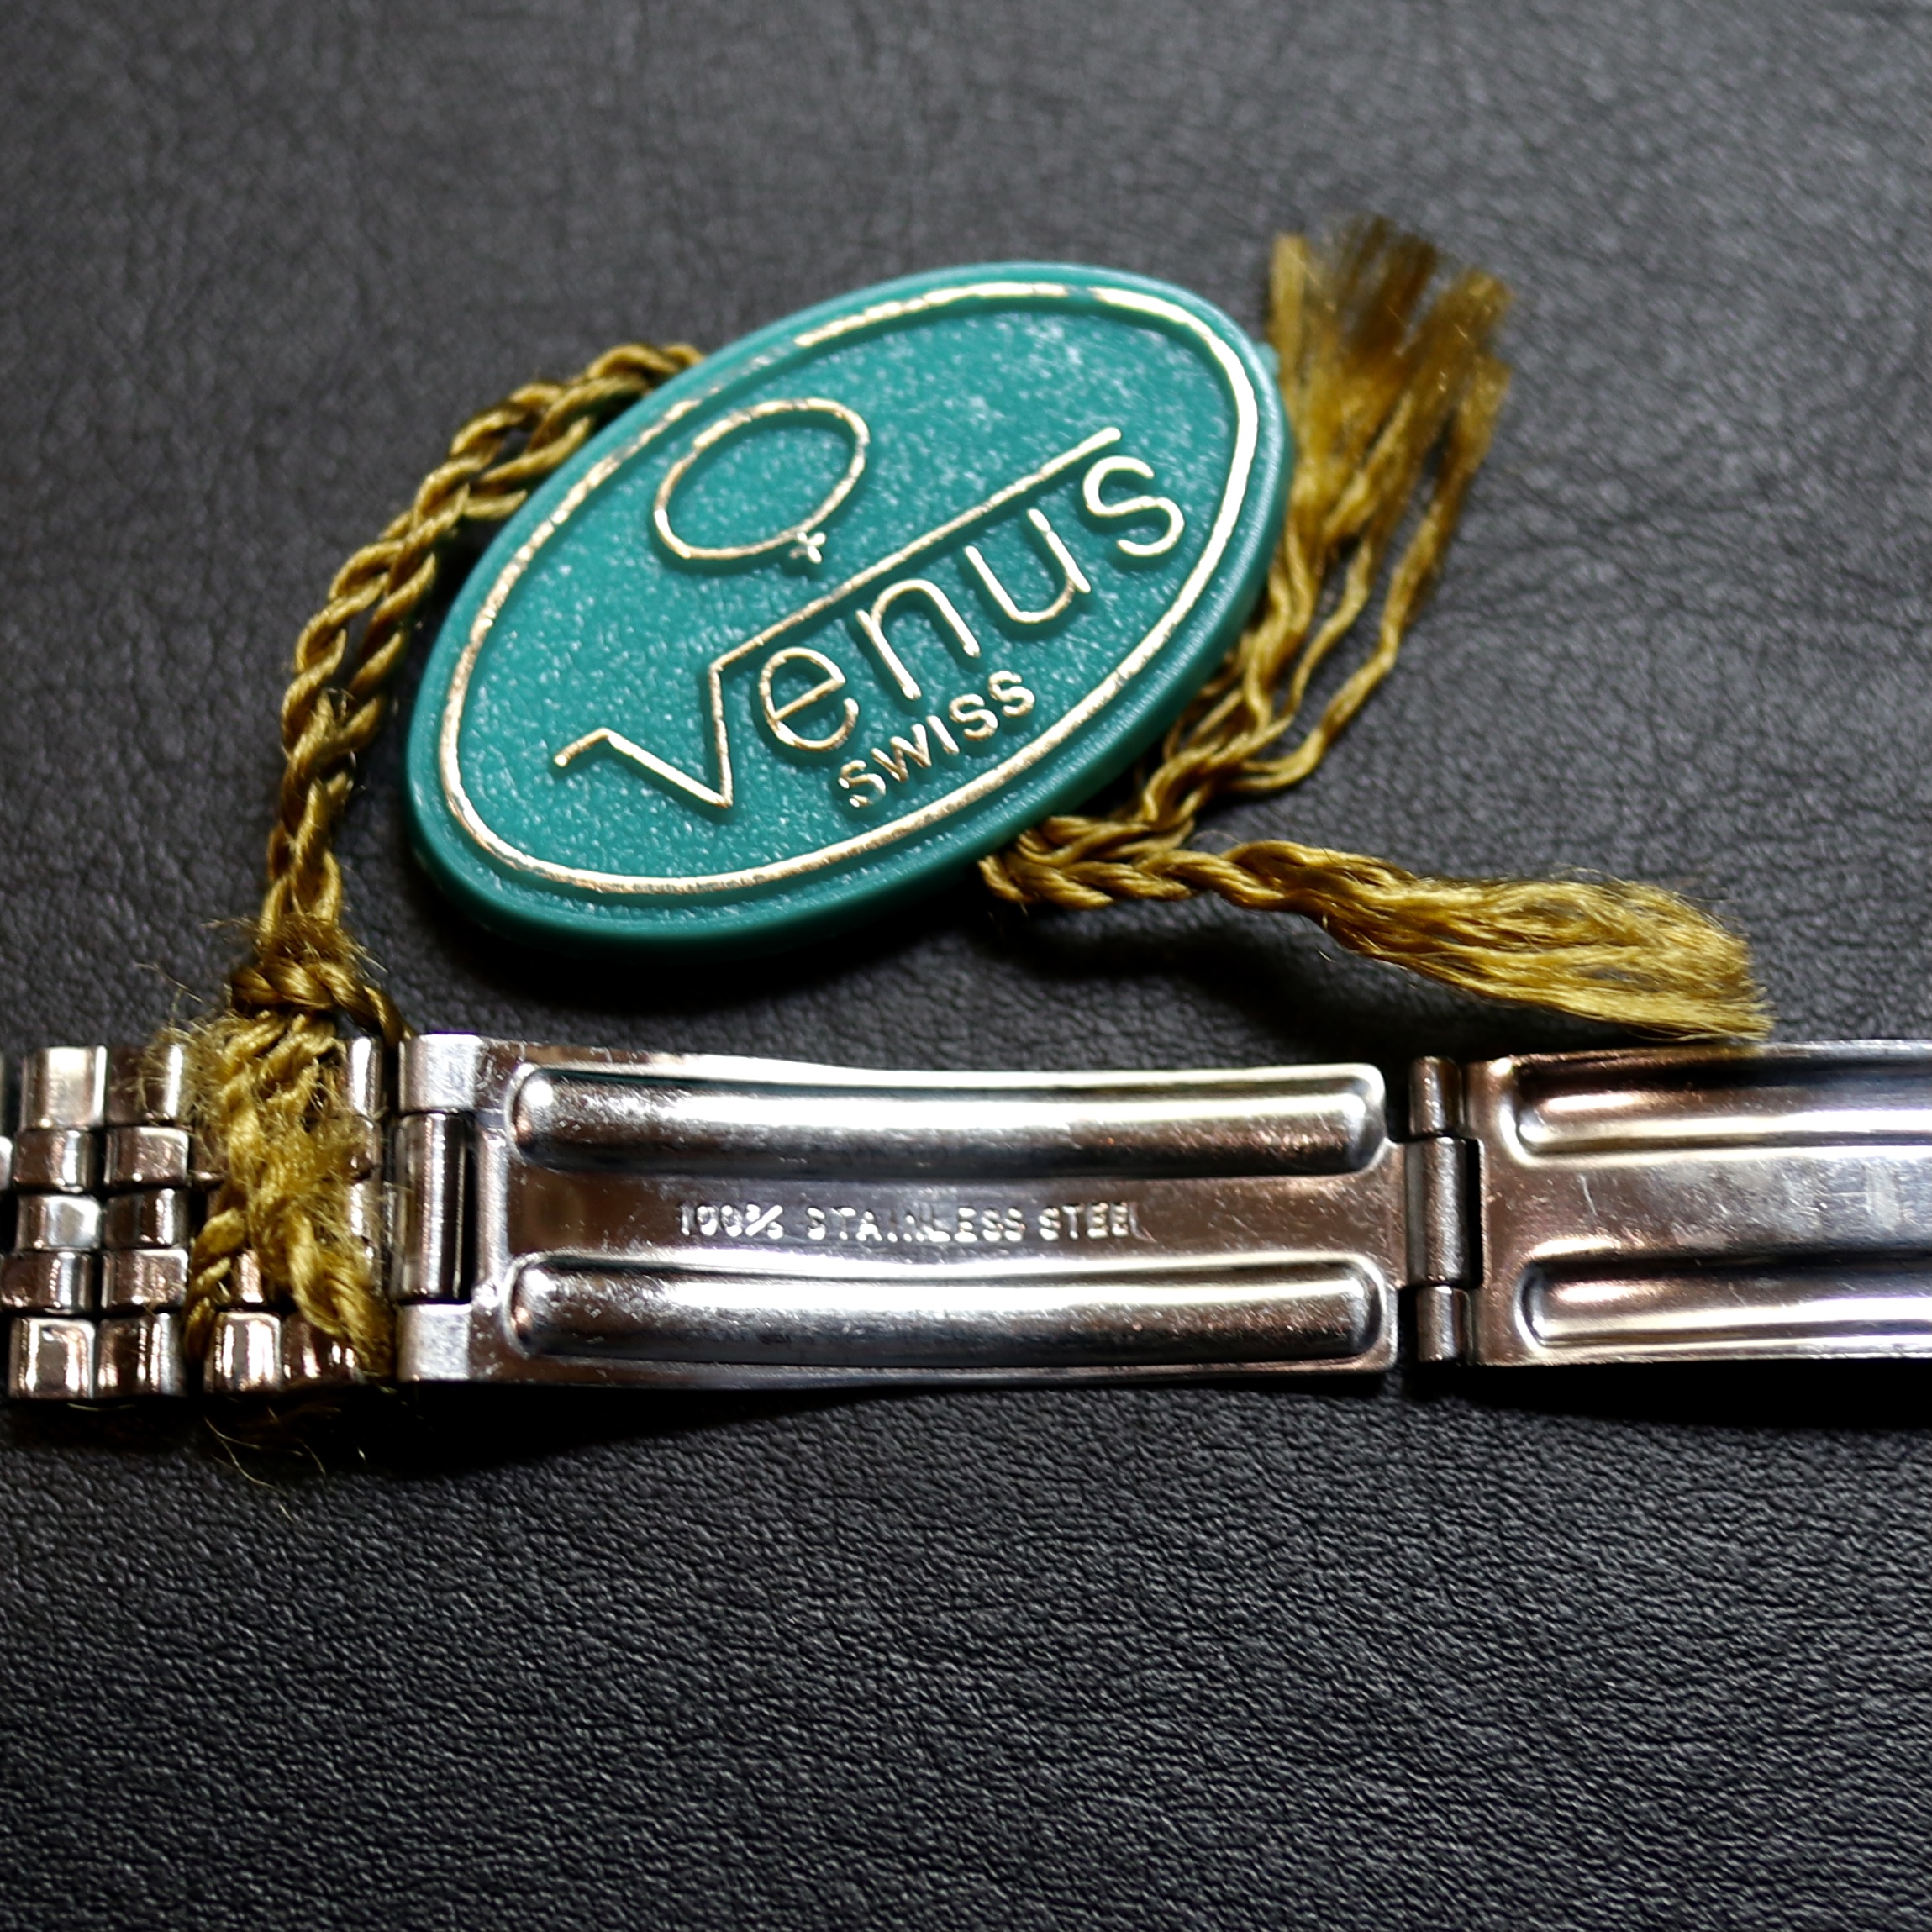 【Venus】Vintage Diver NOS / 腕時計 レディース おしゃれ ブランド 人気 30代 40代 50代 60代 おすすめ プレゼント画像